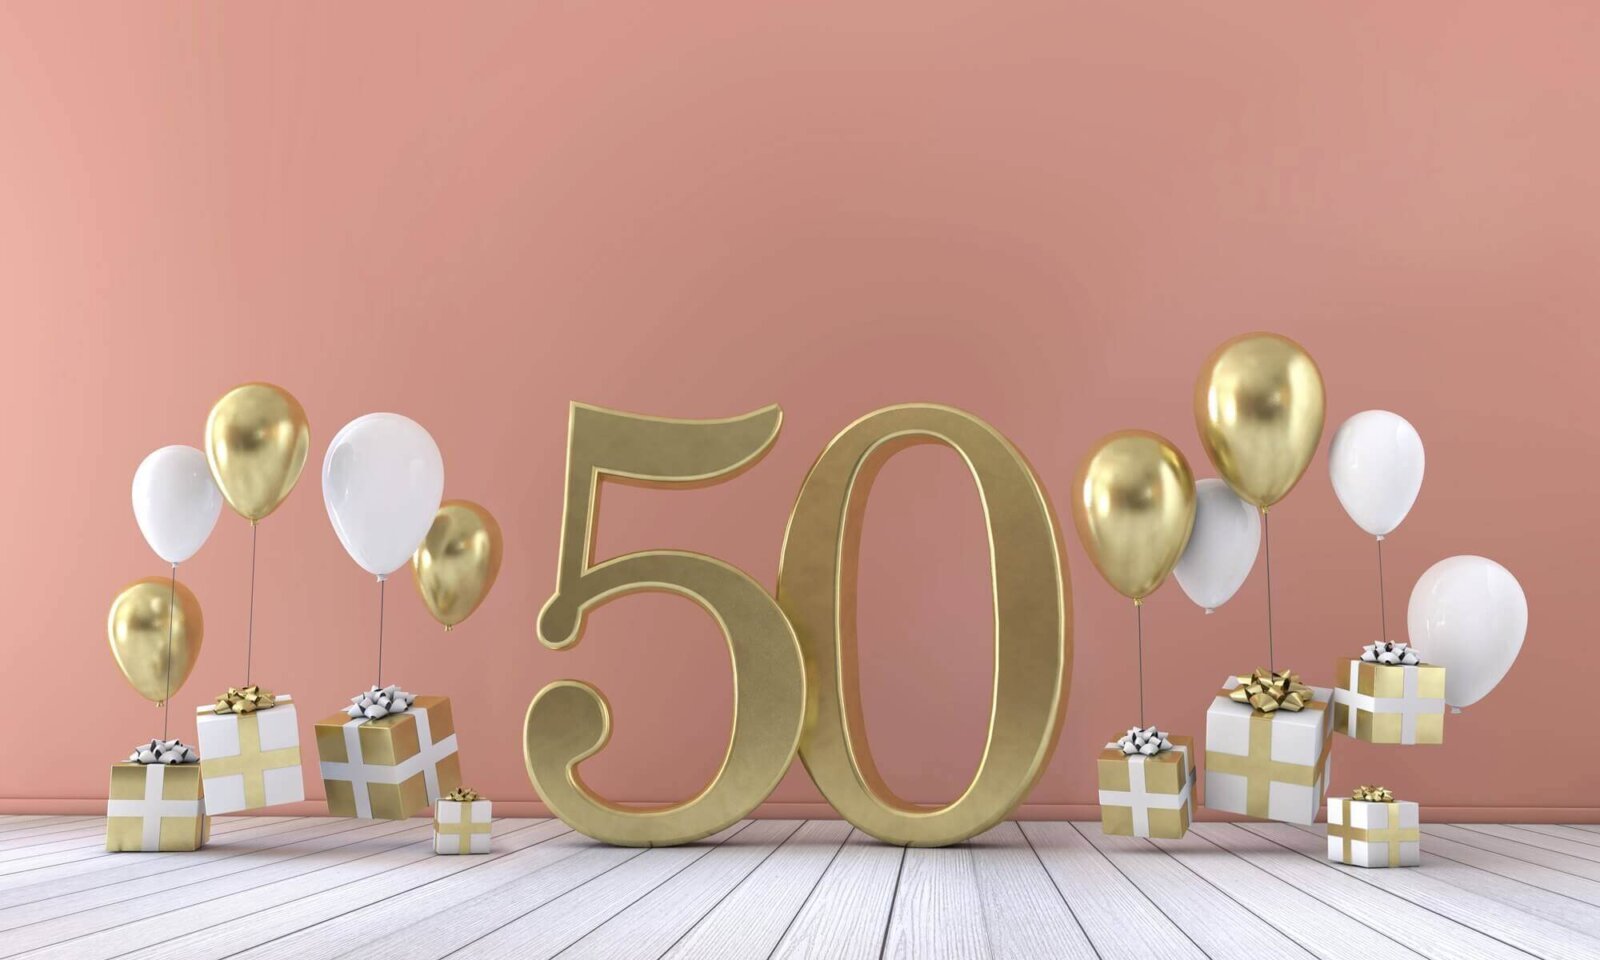 życzenia na 50 urodziny, prezenty i balony na różowym tle